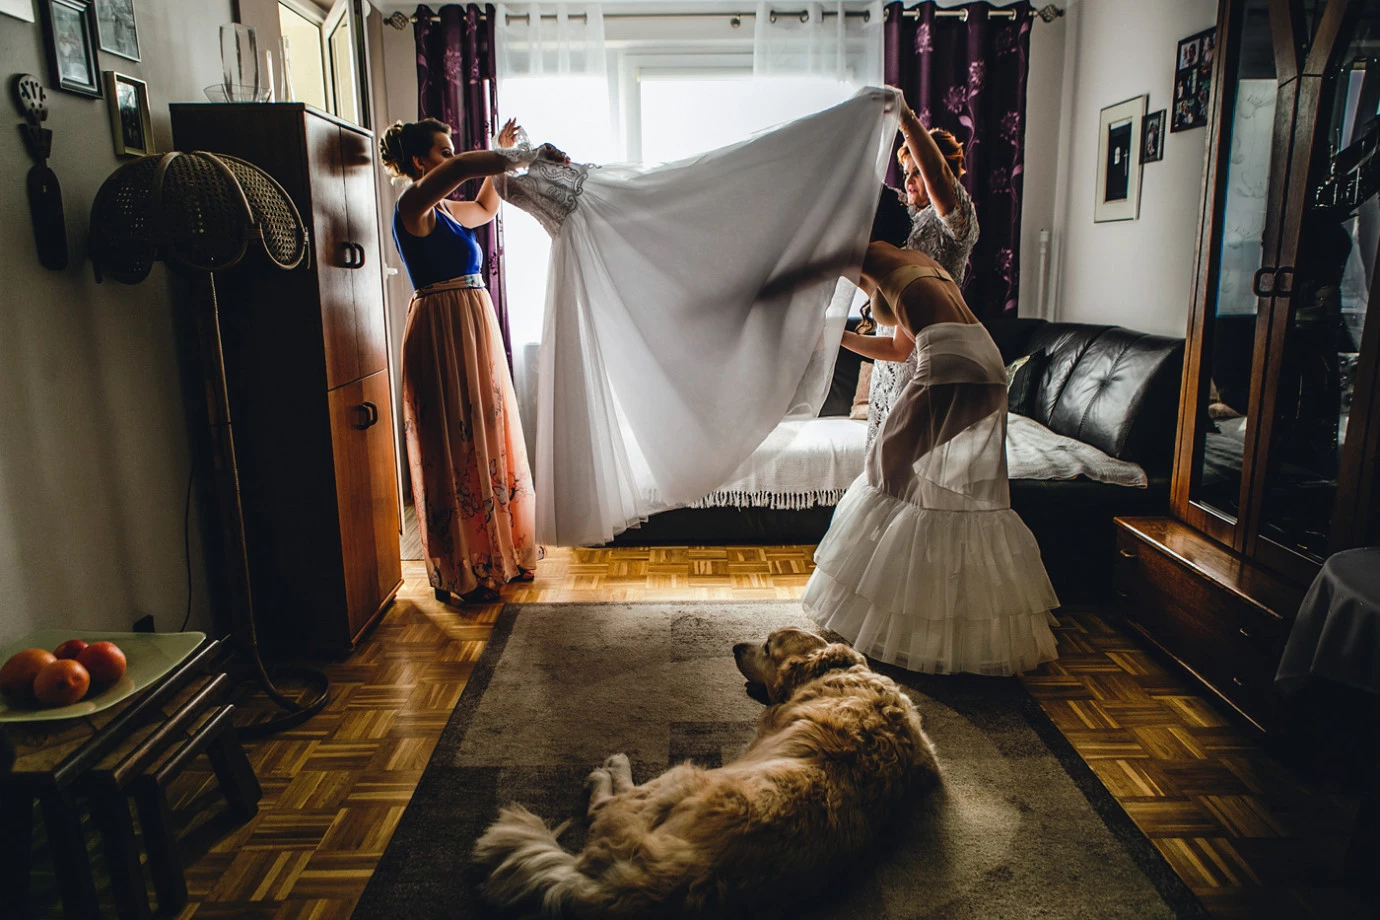 fotograf kielce marcin-kowalczyk portfolio zdjecia slubne inspiracje wesele plener slubny sesja slubna